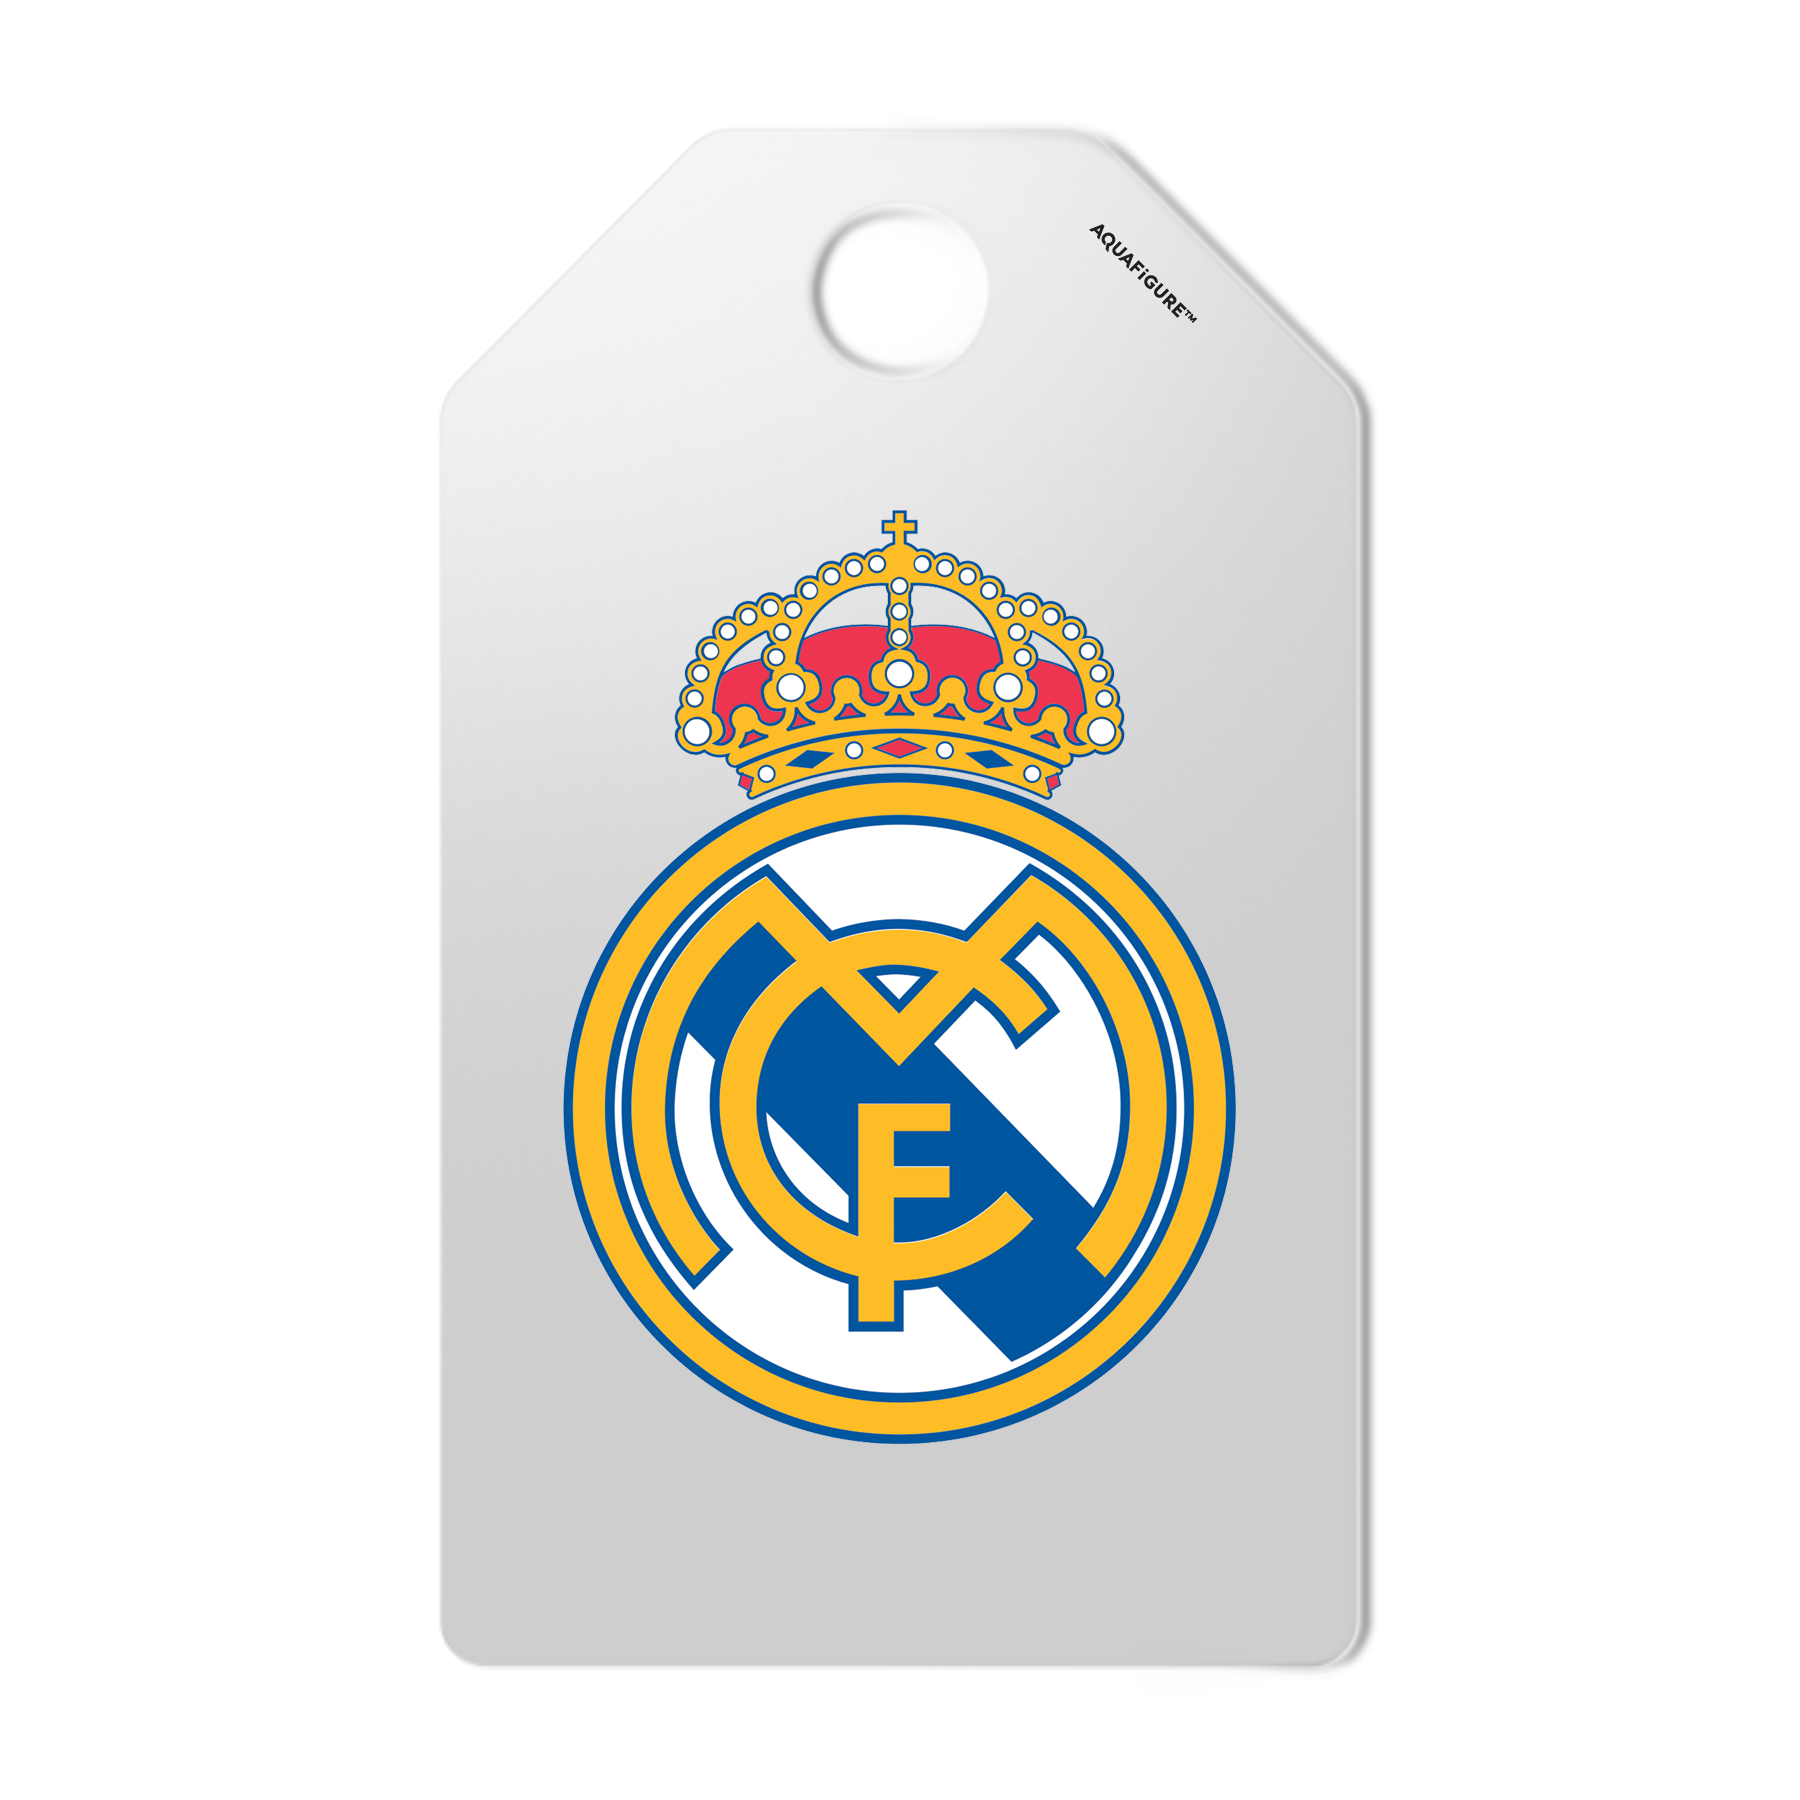 Real Madrid kvinnelag - Aquafigure flaske inkludert klubblogo og 5 spillere